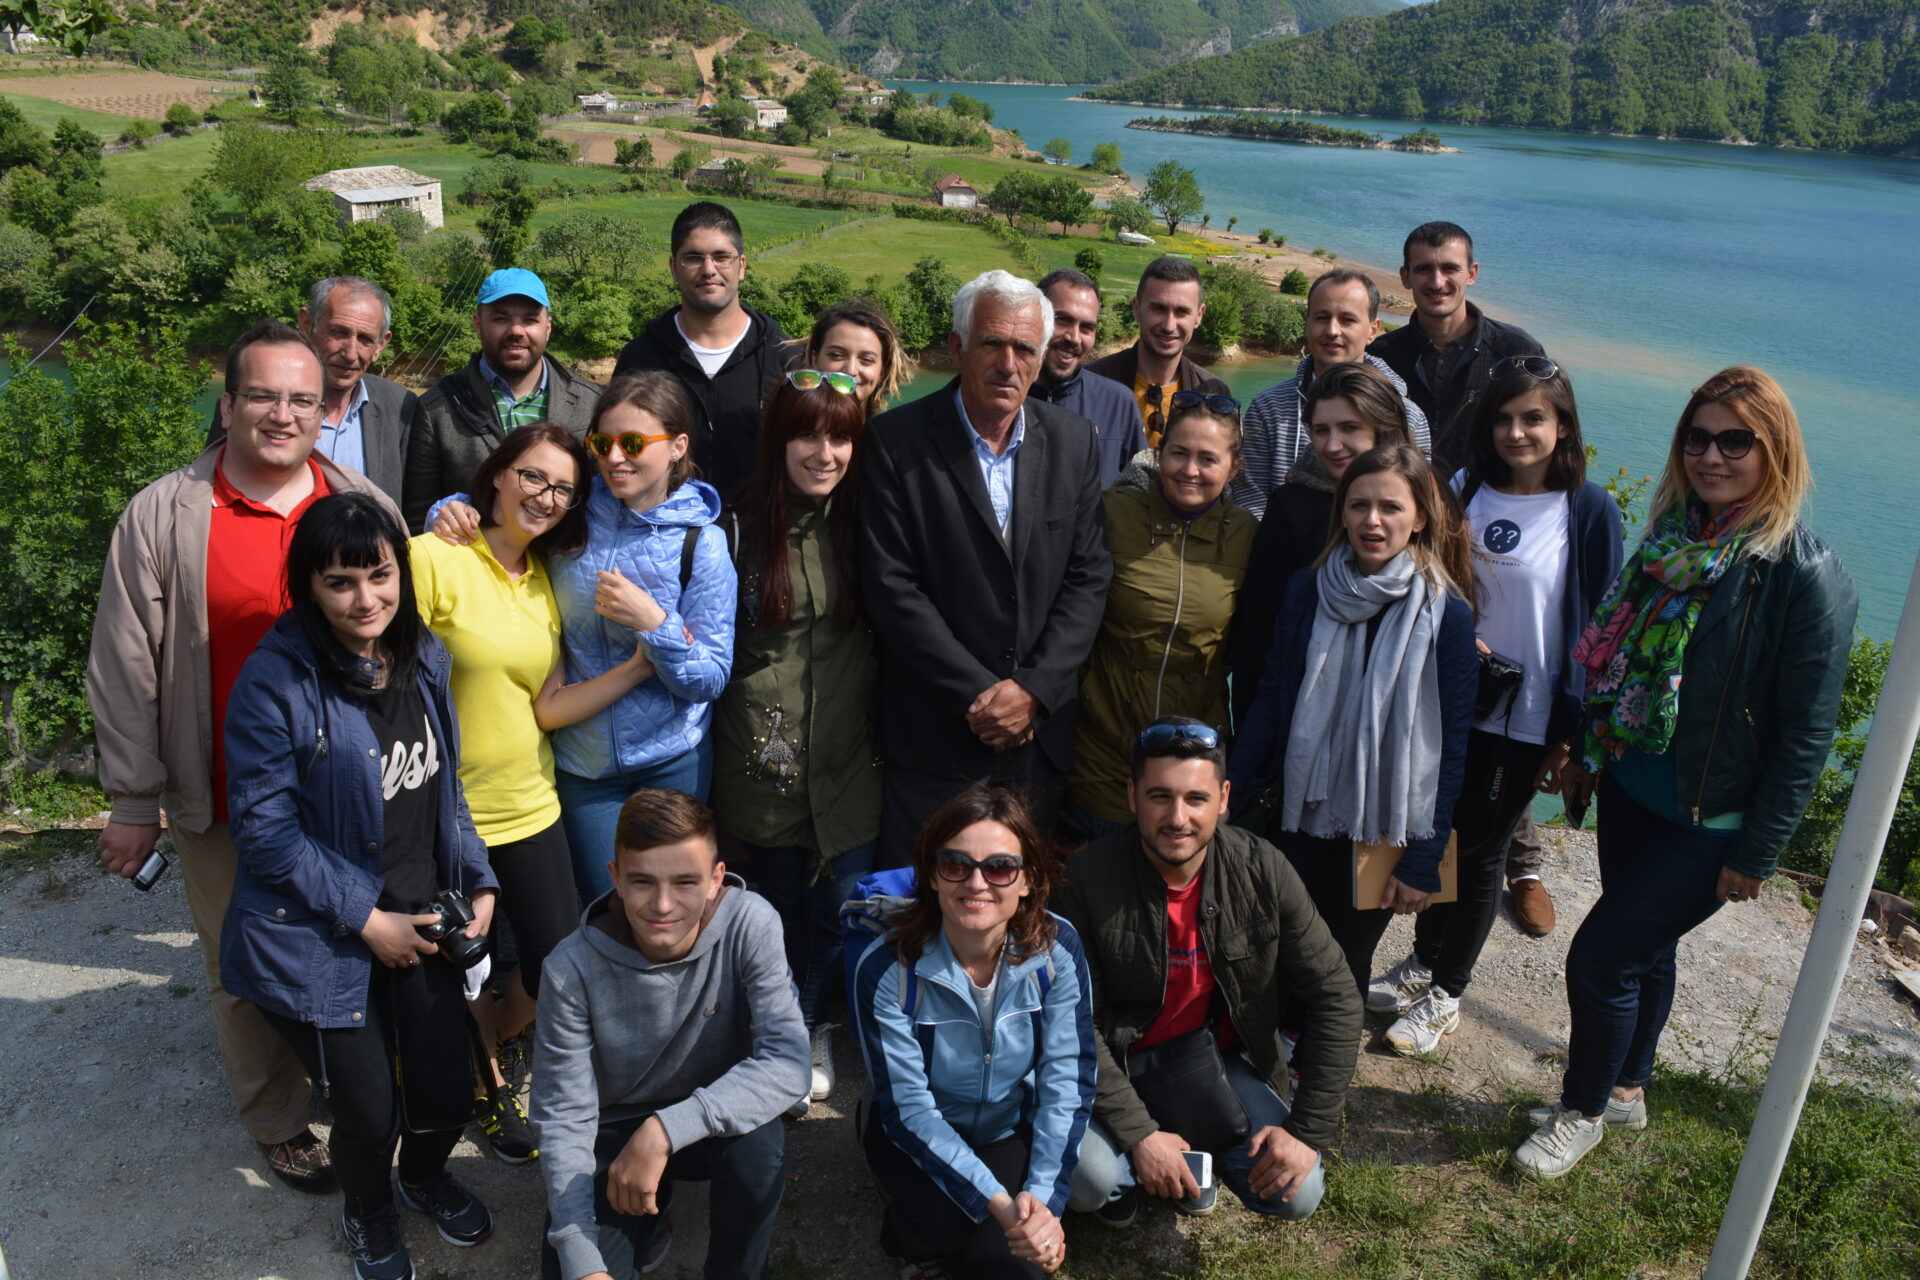 Grupi i udhëtimit eksplorues organizuar nga INTBAU Albania. Citizens Channel